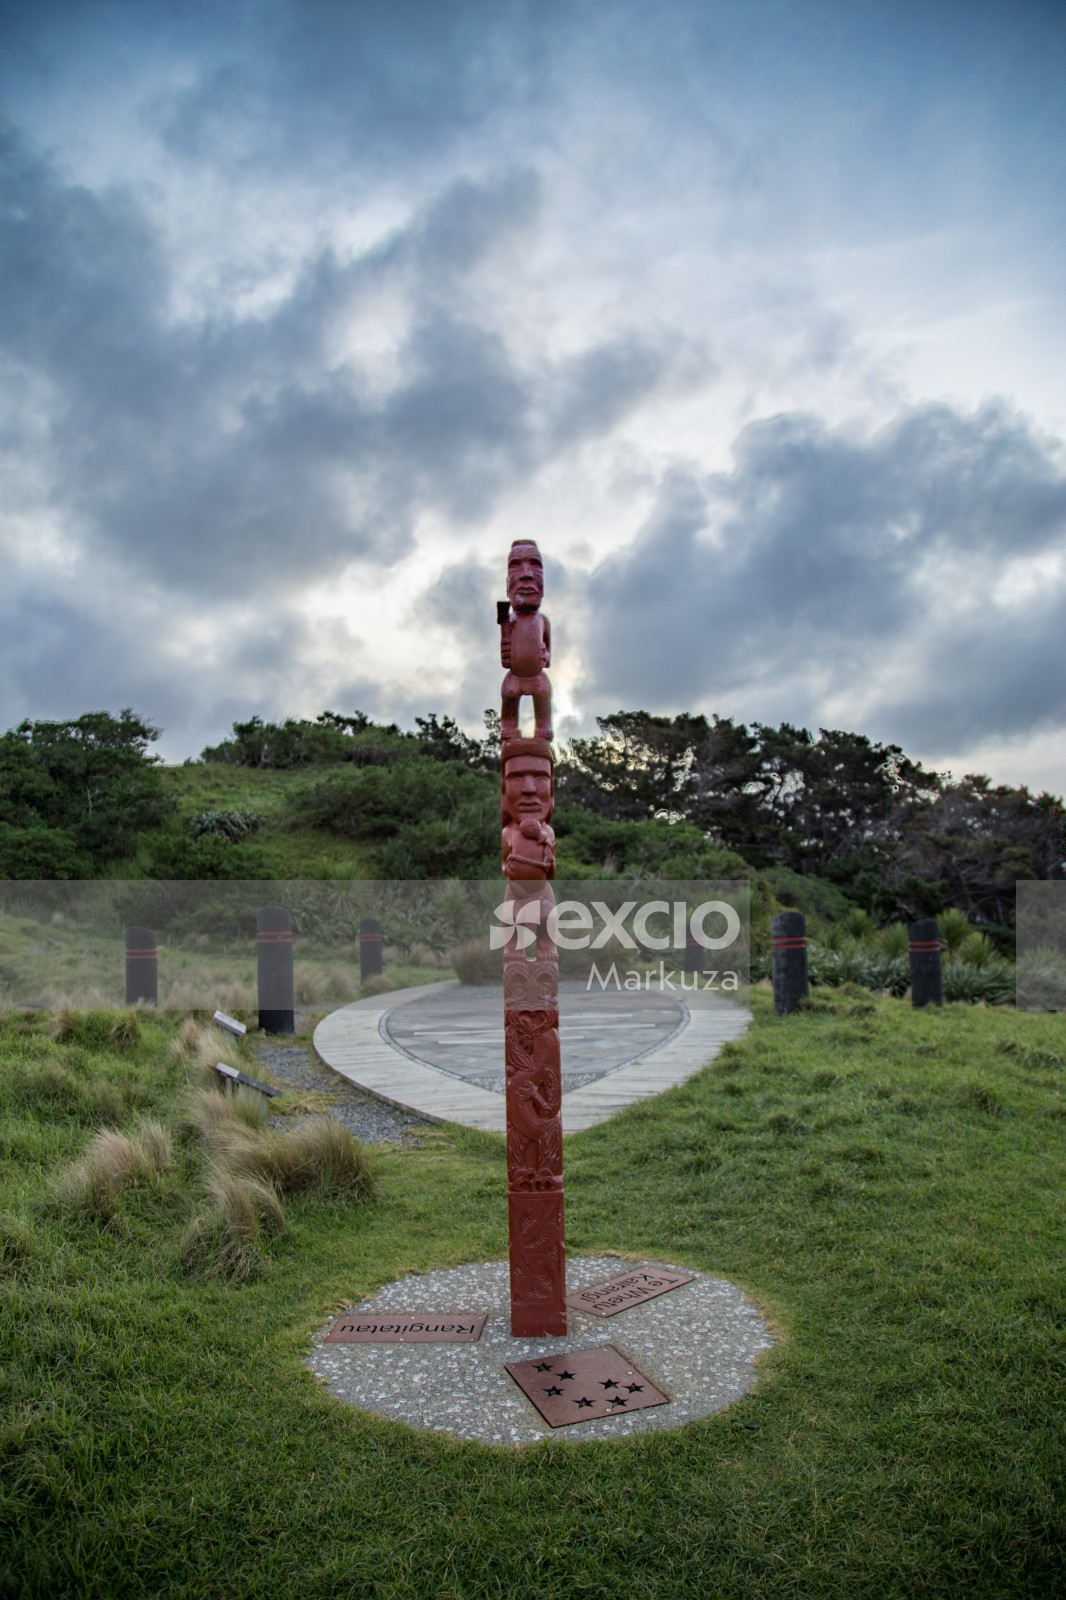 Statue of Kupe the explorer - Ko kupe, te kaihōpara tuatahi